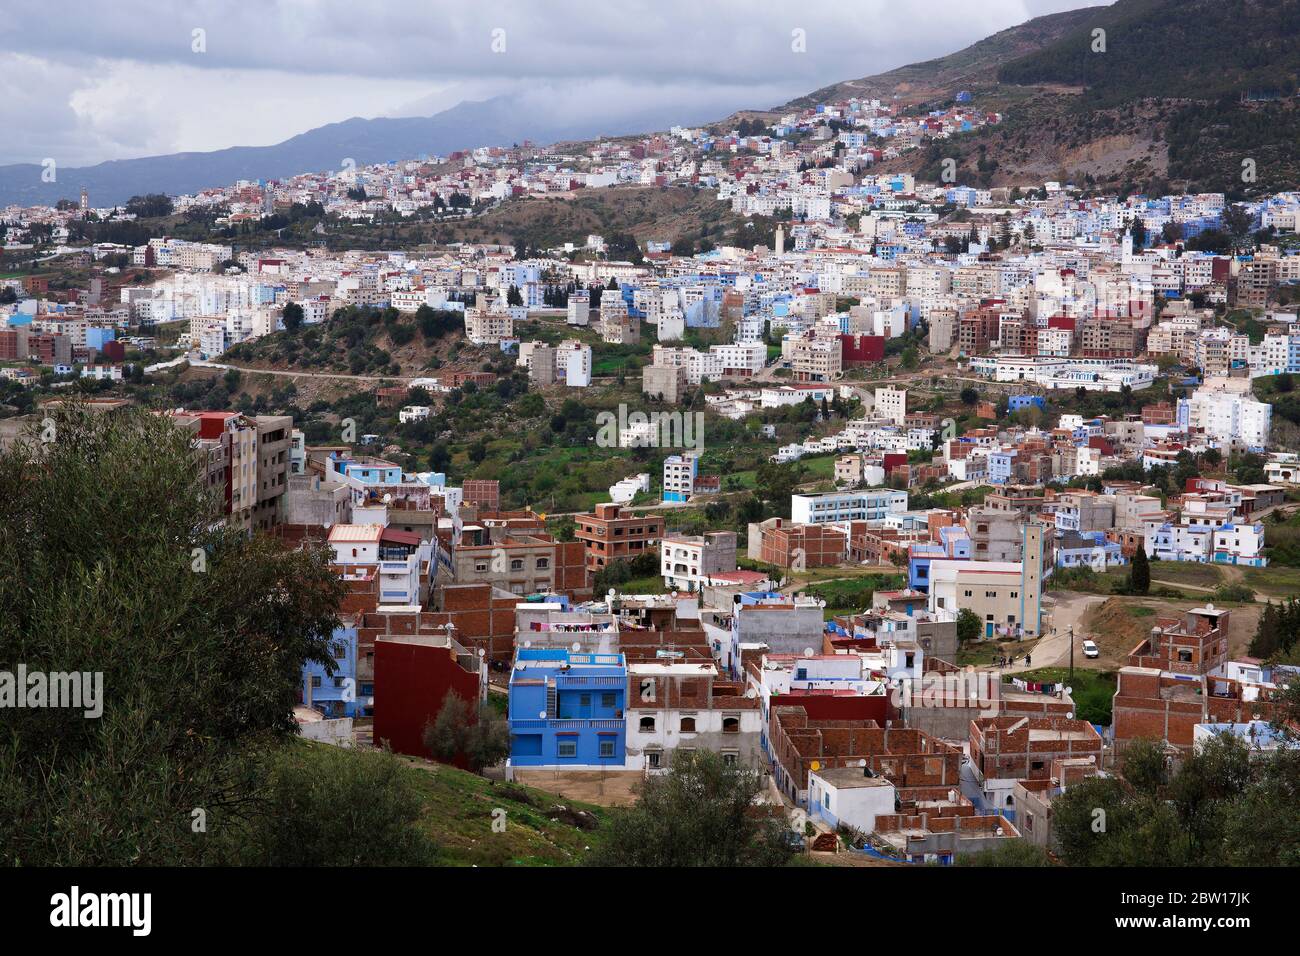 Chefchaouen - connu sous le nom de Blue City - situé dans les montagnes de RIF au nord-ouest du Maroc Banque D'Images